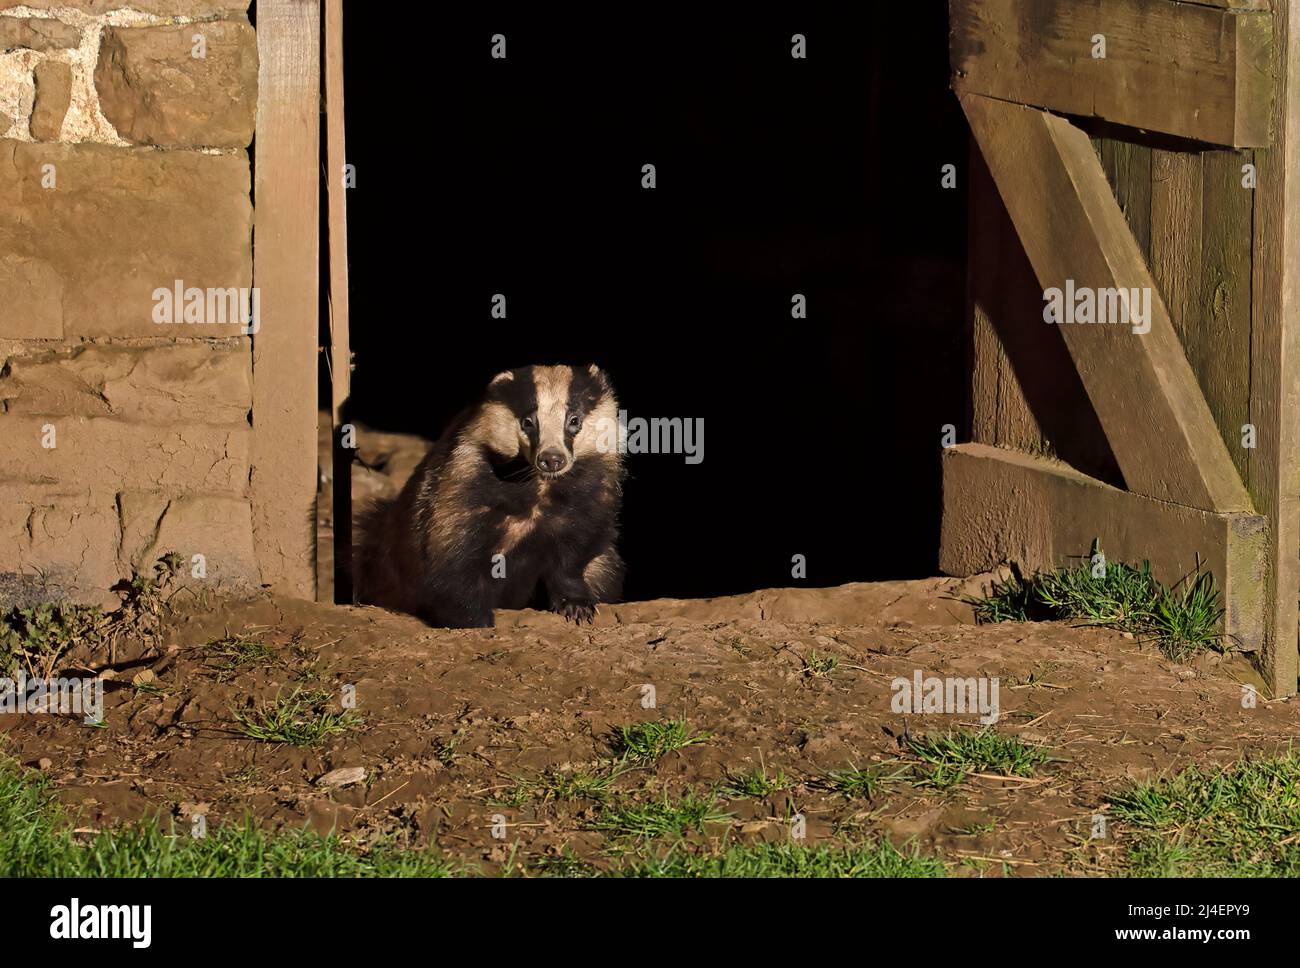 Badger européen, Meles meles. Une famille de blaireaux, cete, a un nid, un terreau, à l'intérieur d'une grange abandonnée à Wensleydale, dans le parc national de Yorkshire Dales. Banque D'Images